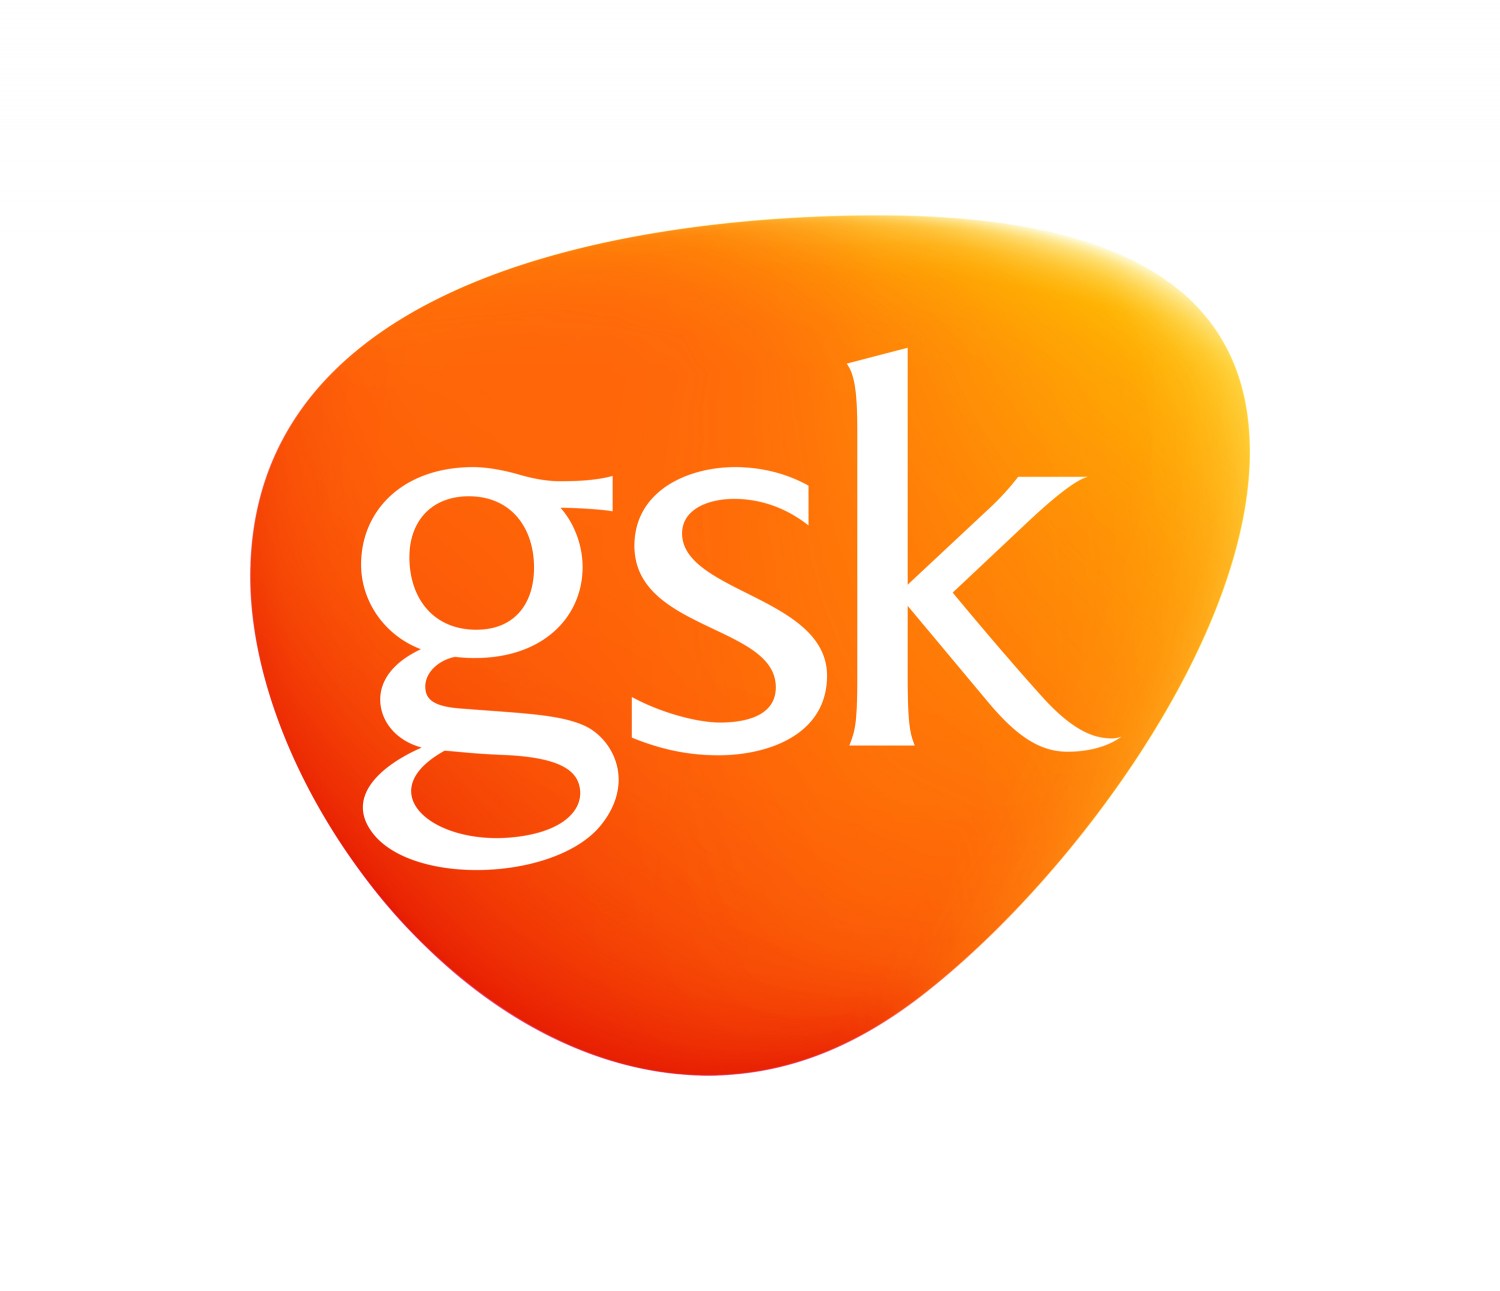 Інновації, результативність, довіра – три пріоритети керованого наукою фармацевтичного виробника Компанії GSK 20 років